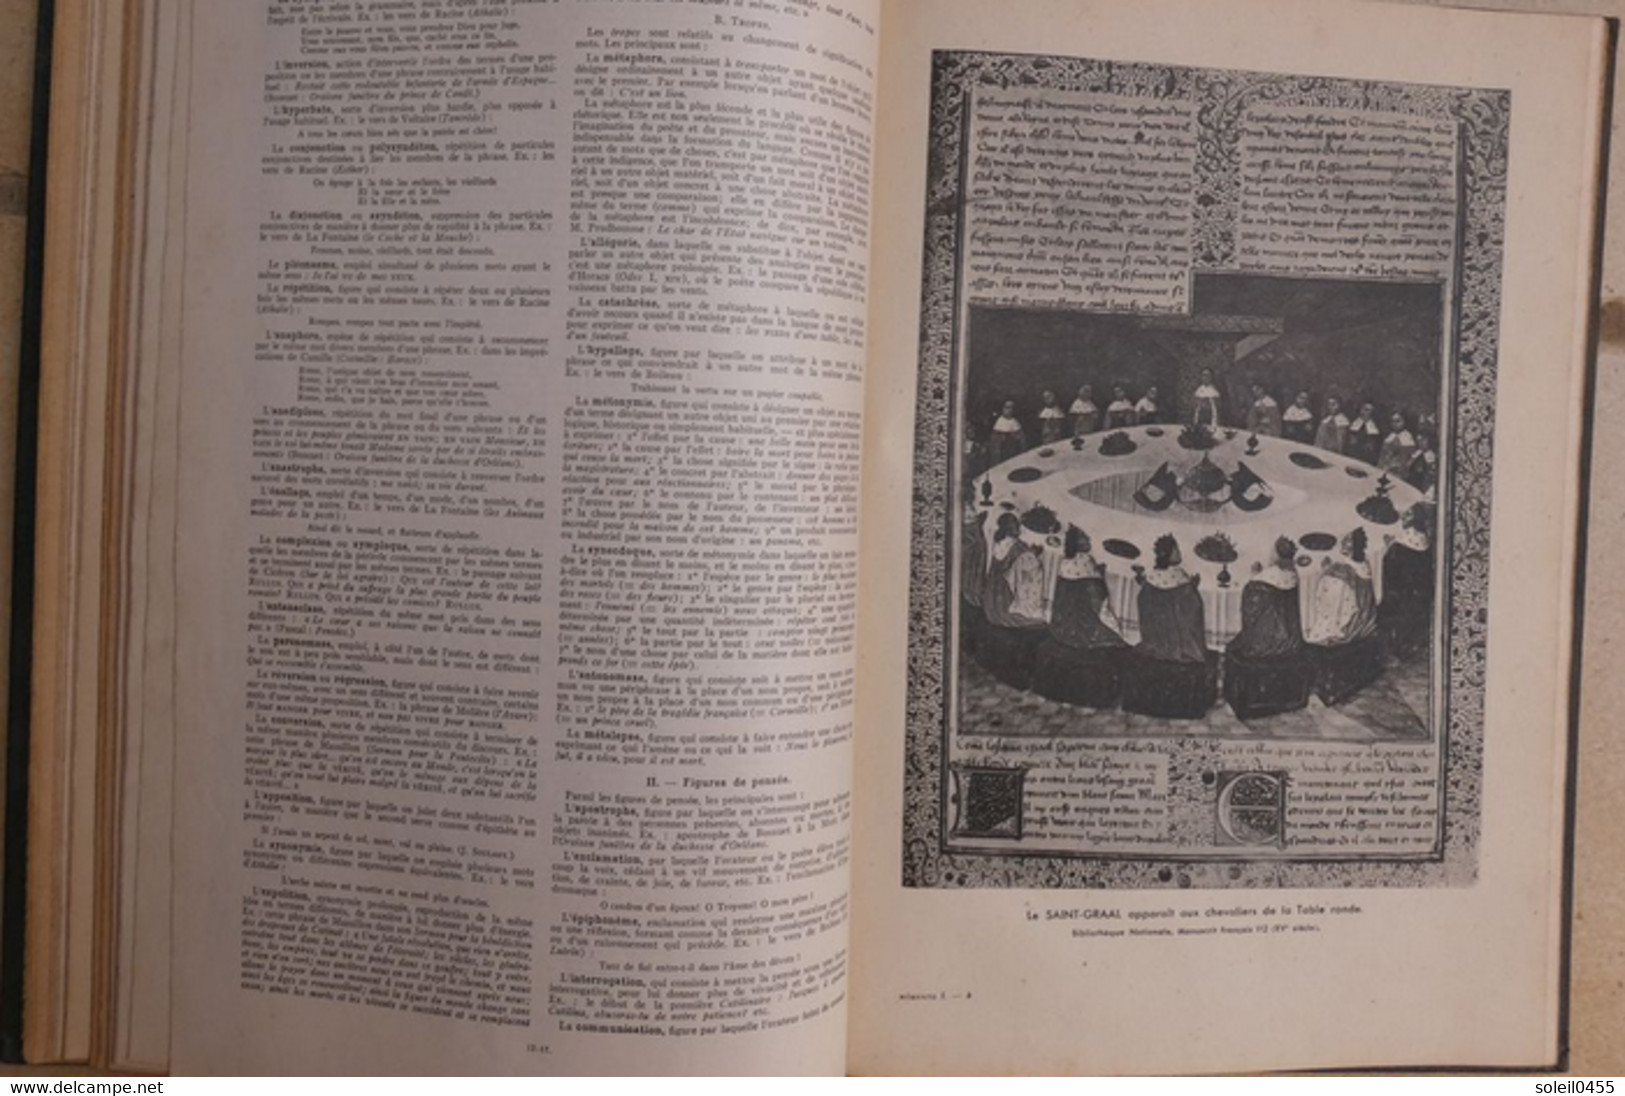 Grand mémento encyclopédique Larousse (spécimen) 1936